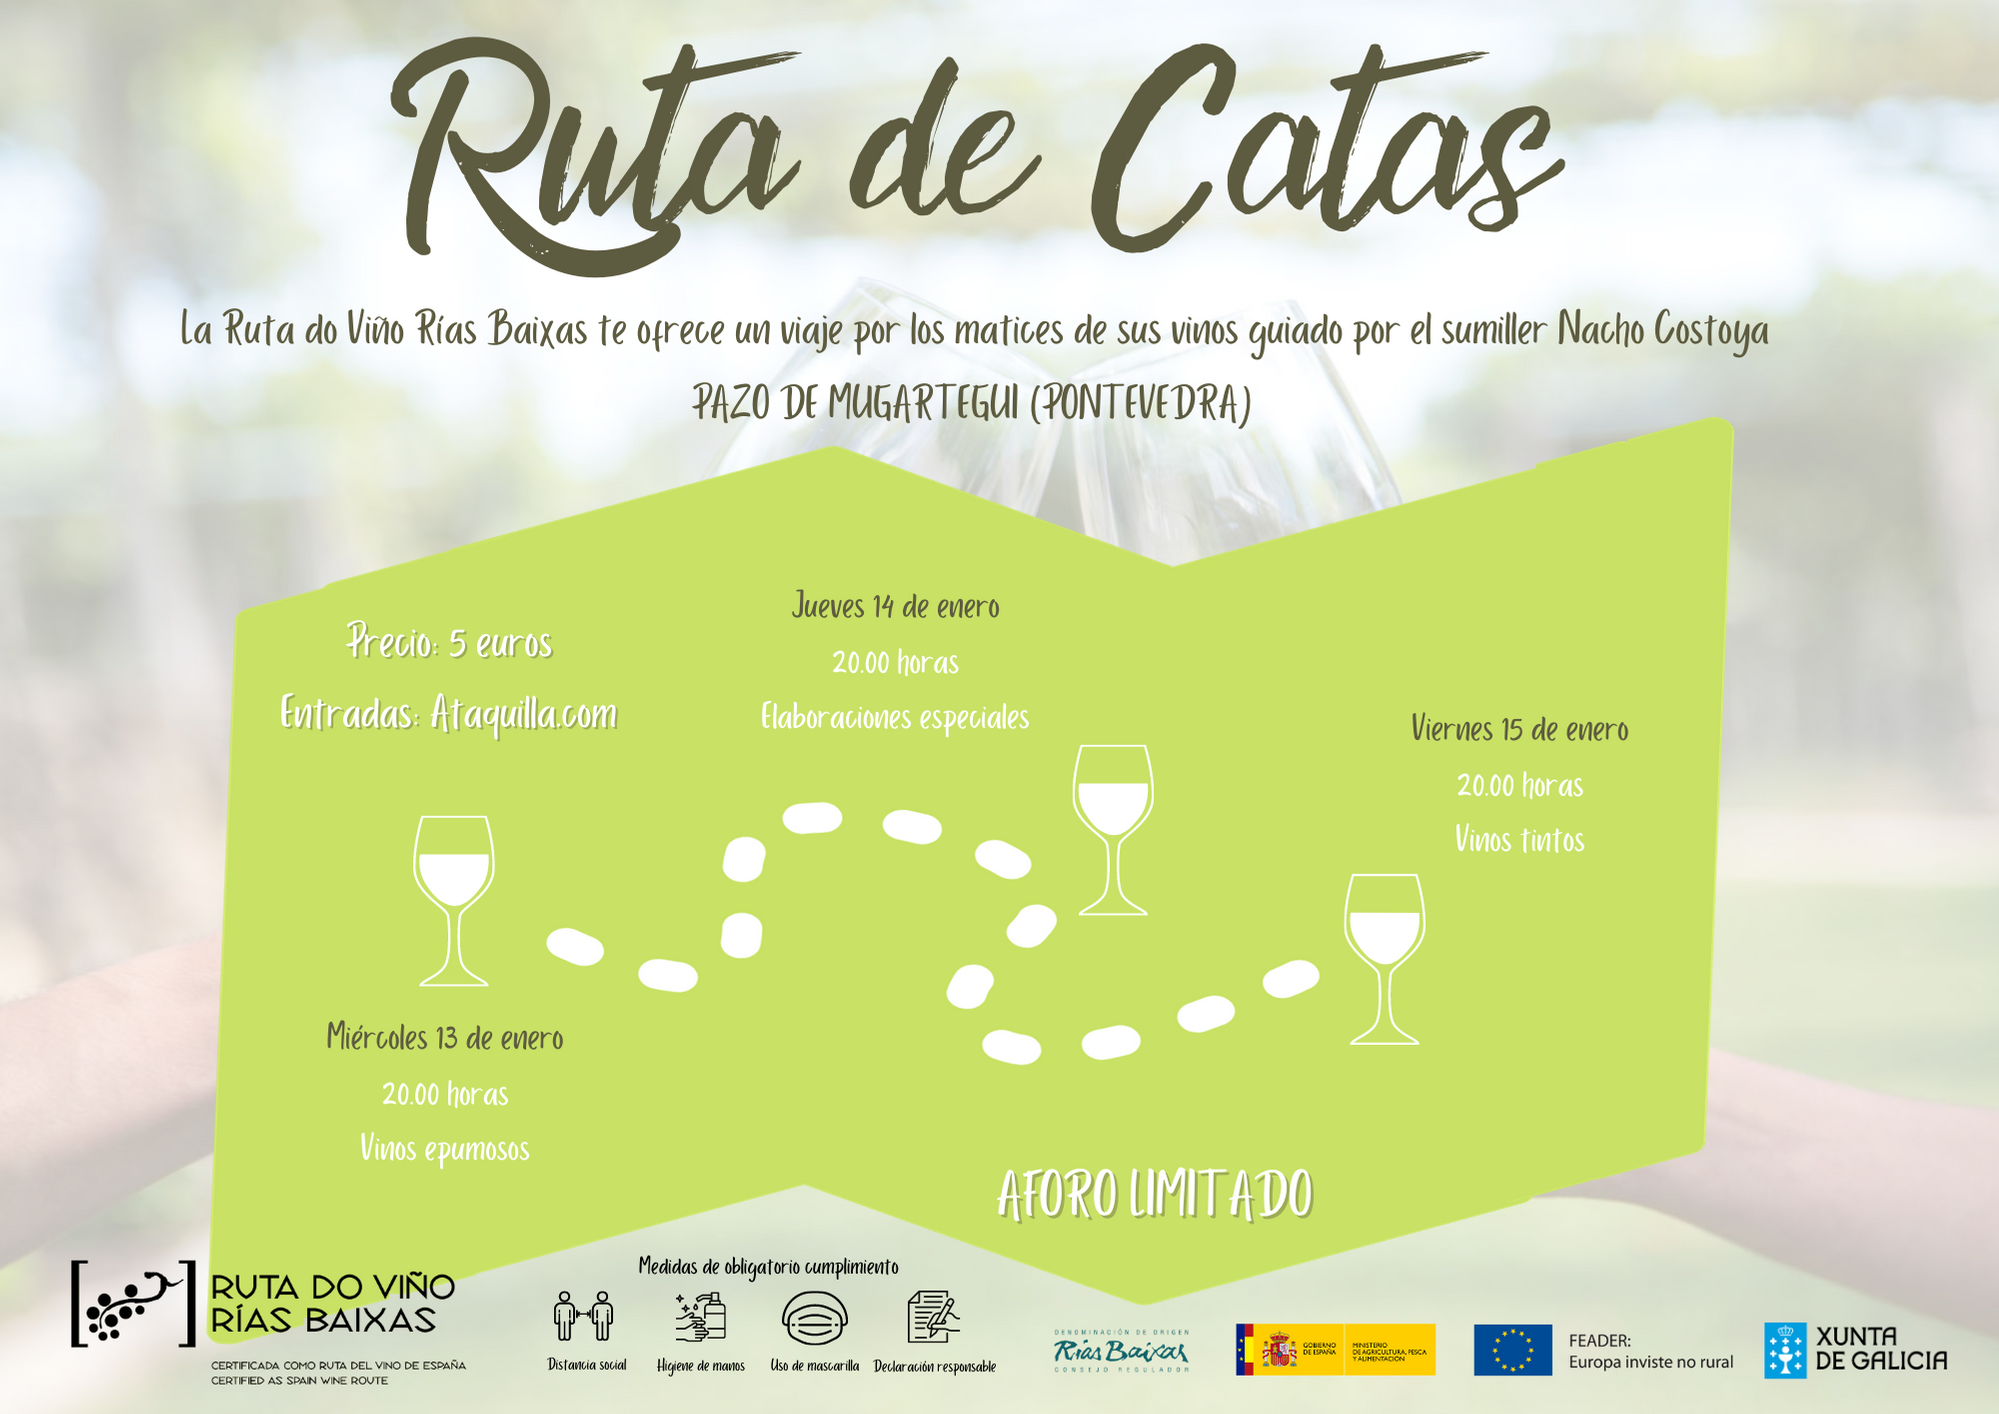 La Ruta do Viño Rías Baixas organiza el programa ‘Ruta de Catas’, que se celebrará la próxima semana en el Pazo de Mugartegui